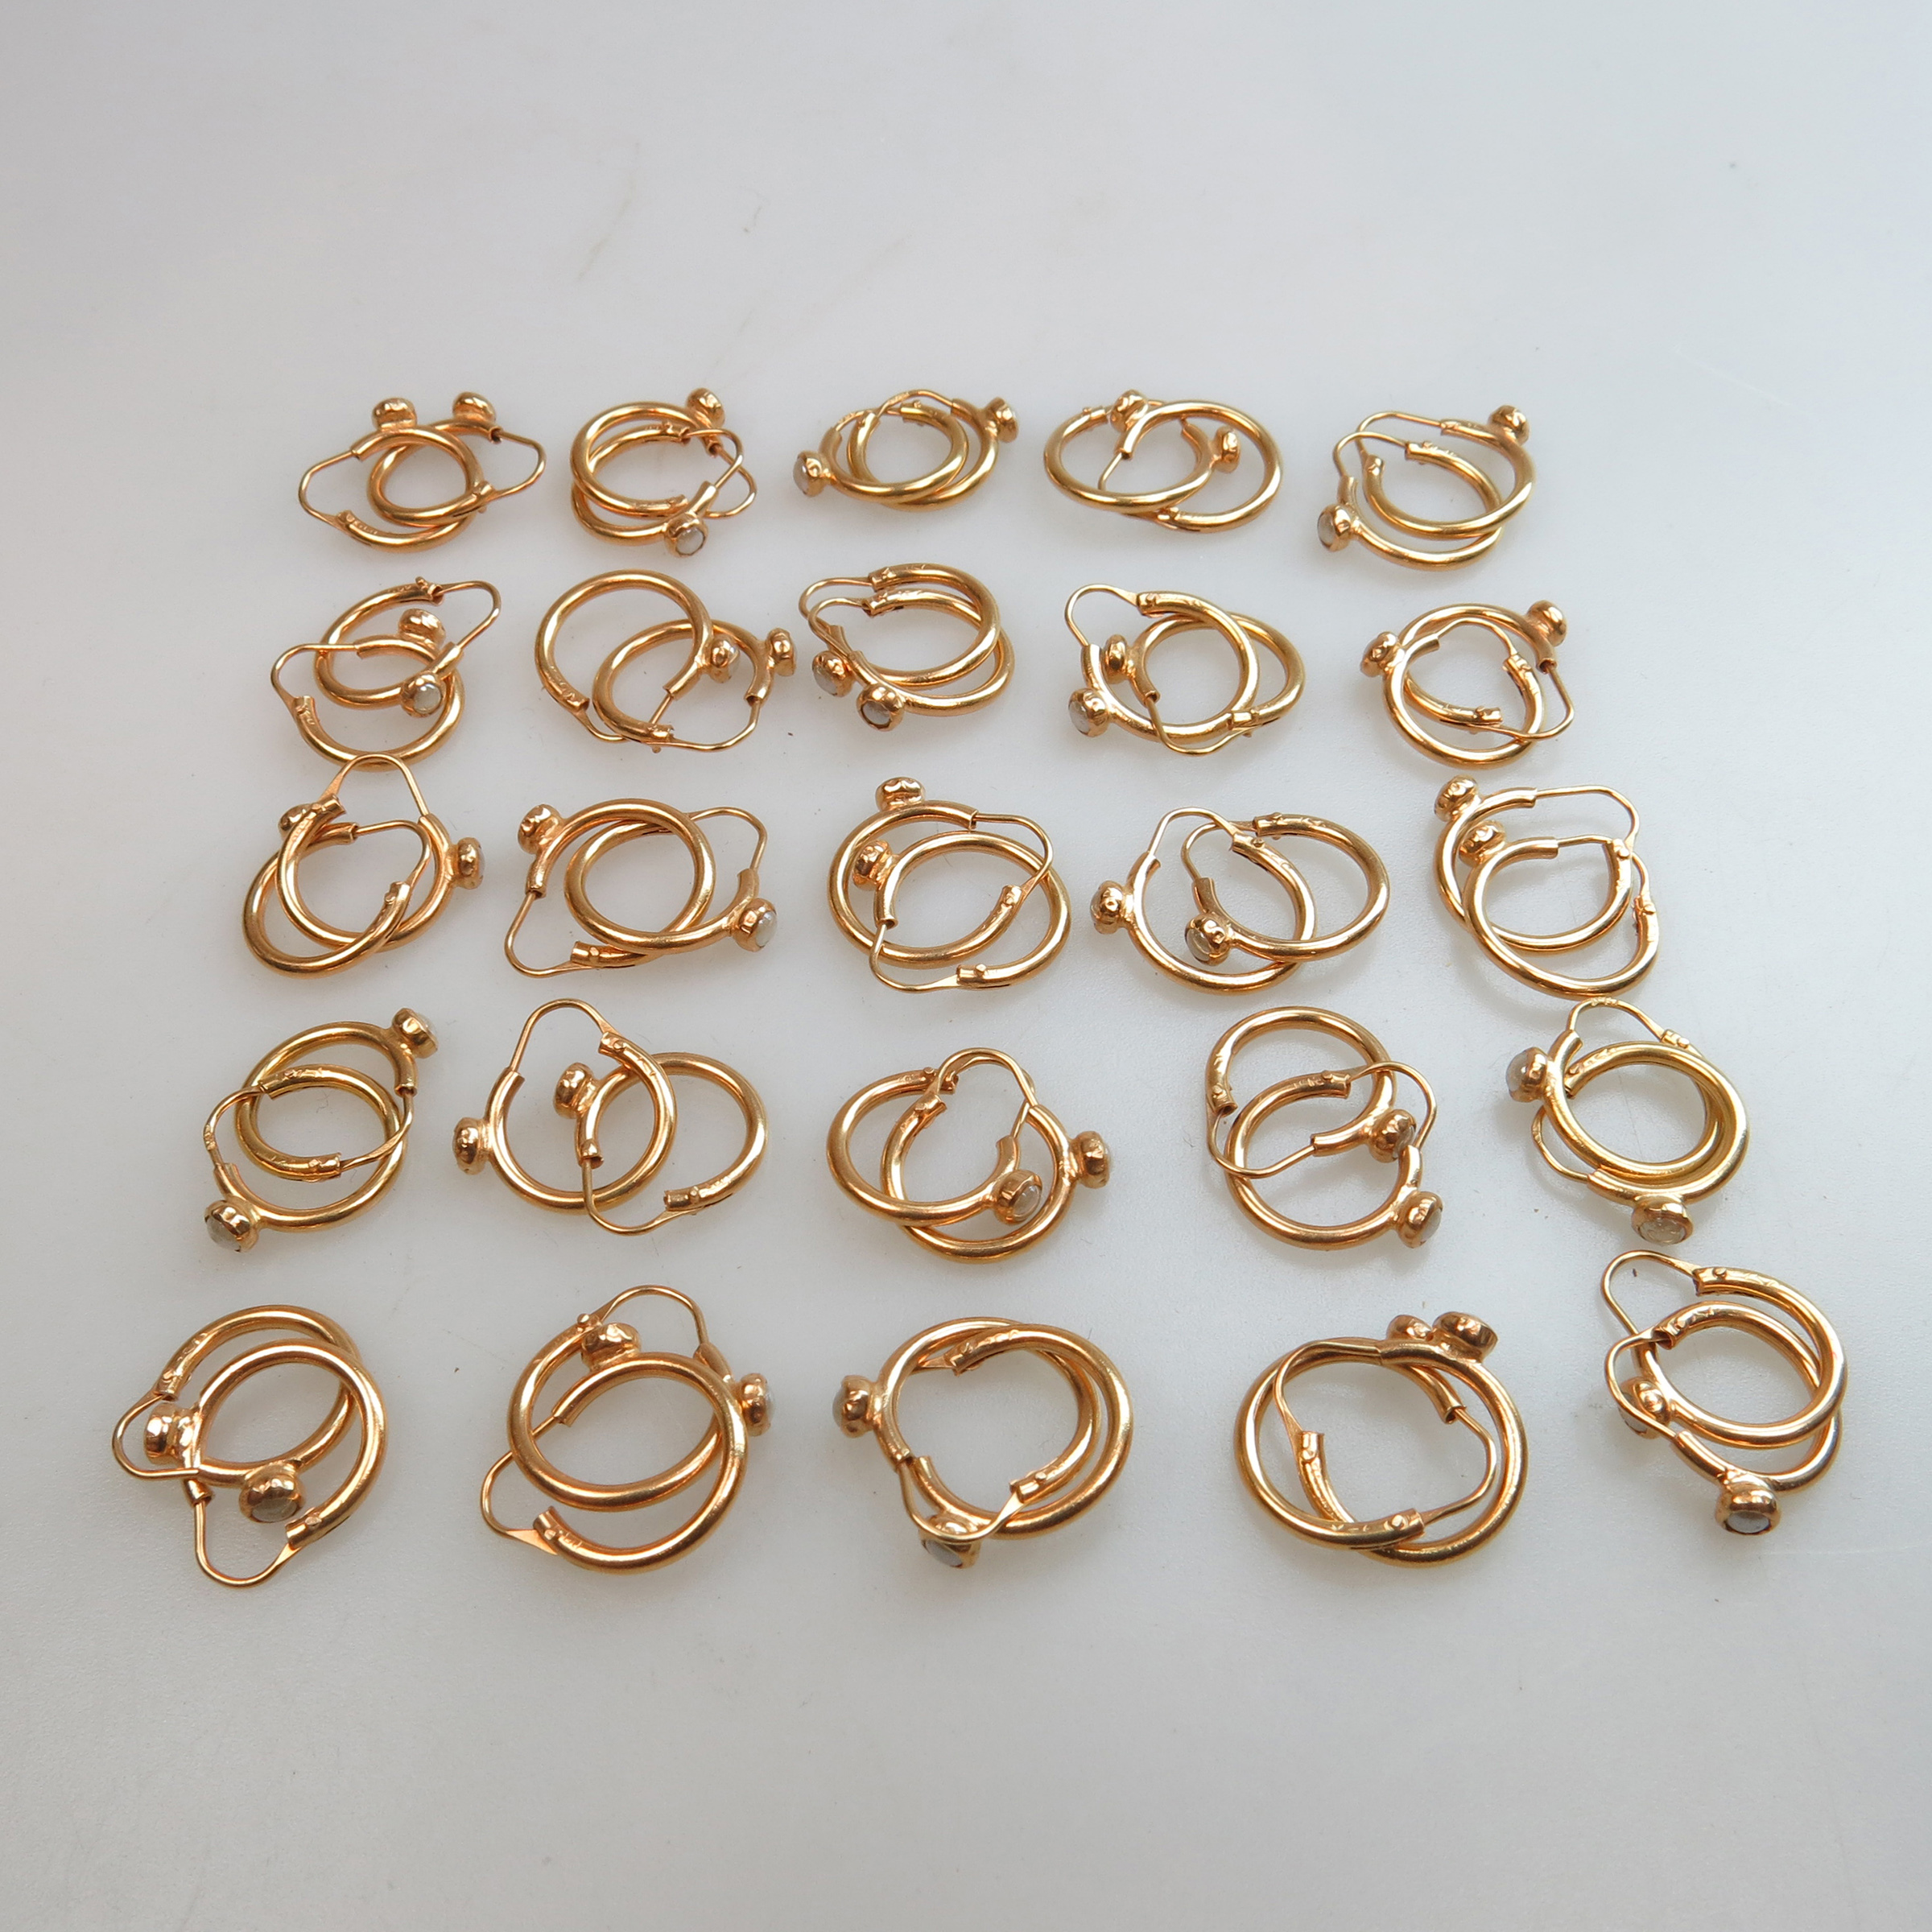 25 x Pairs Of 18K Yellow Gold Hoop Earrings